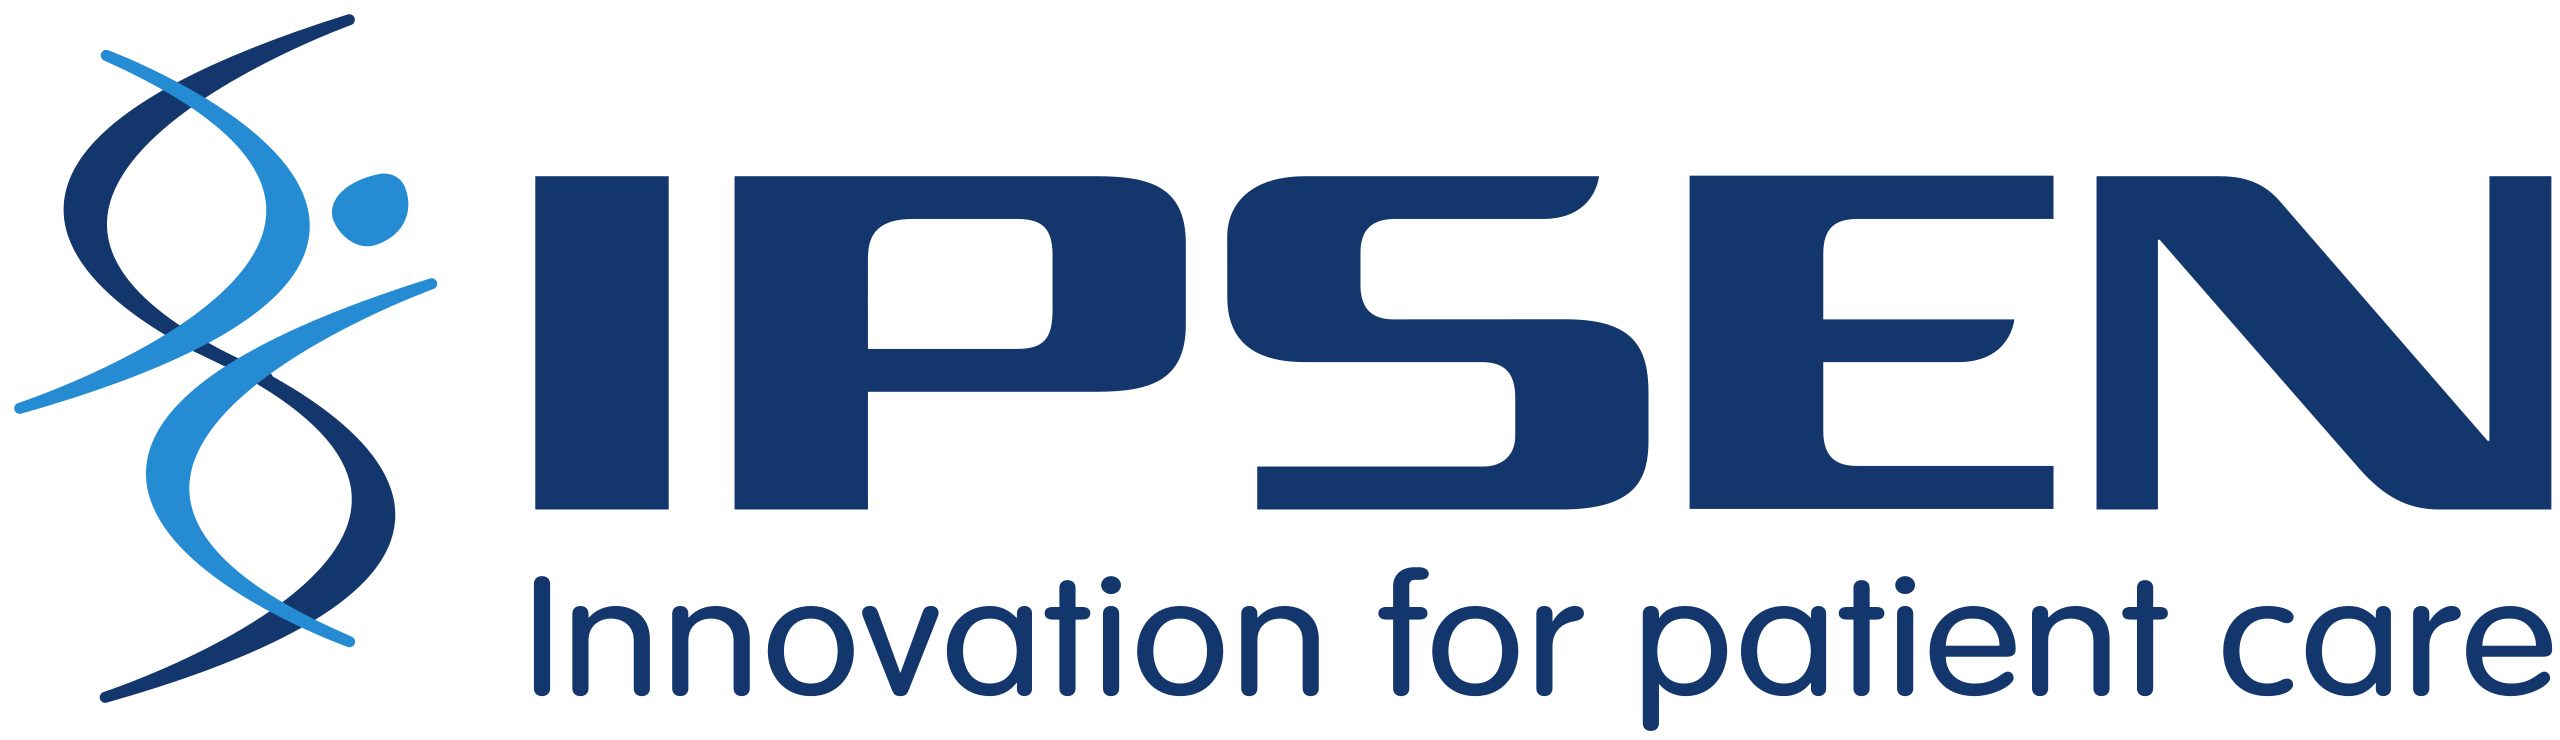 Ipsen_logo.svg